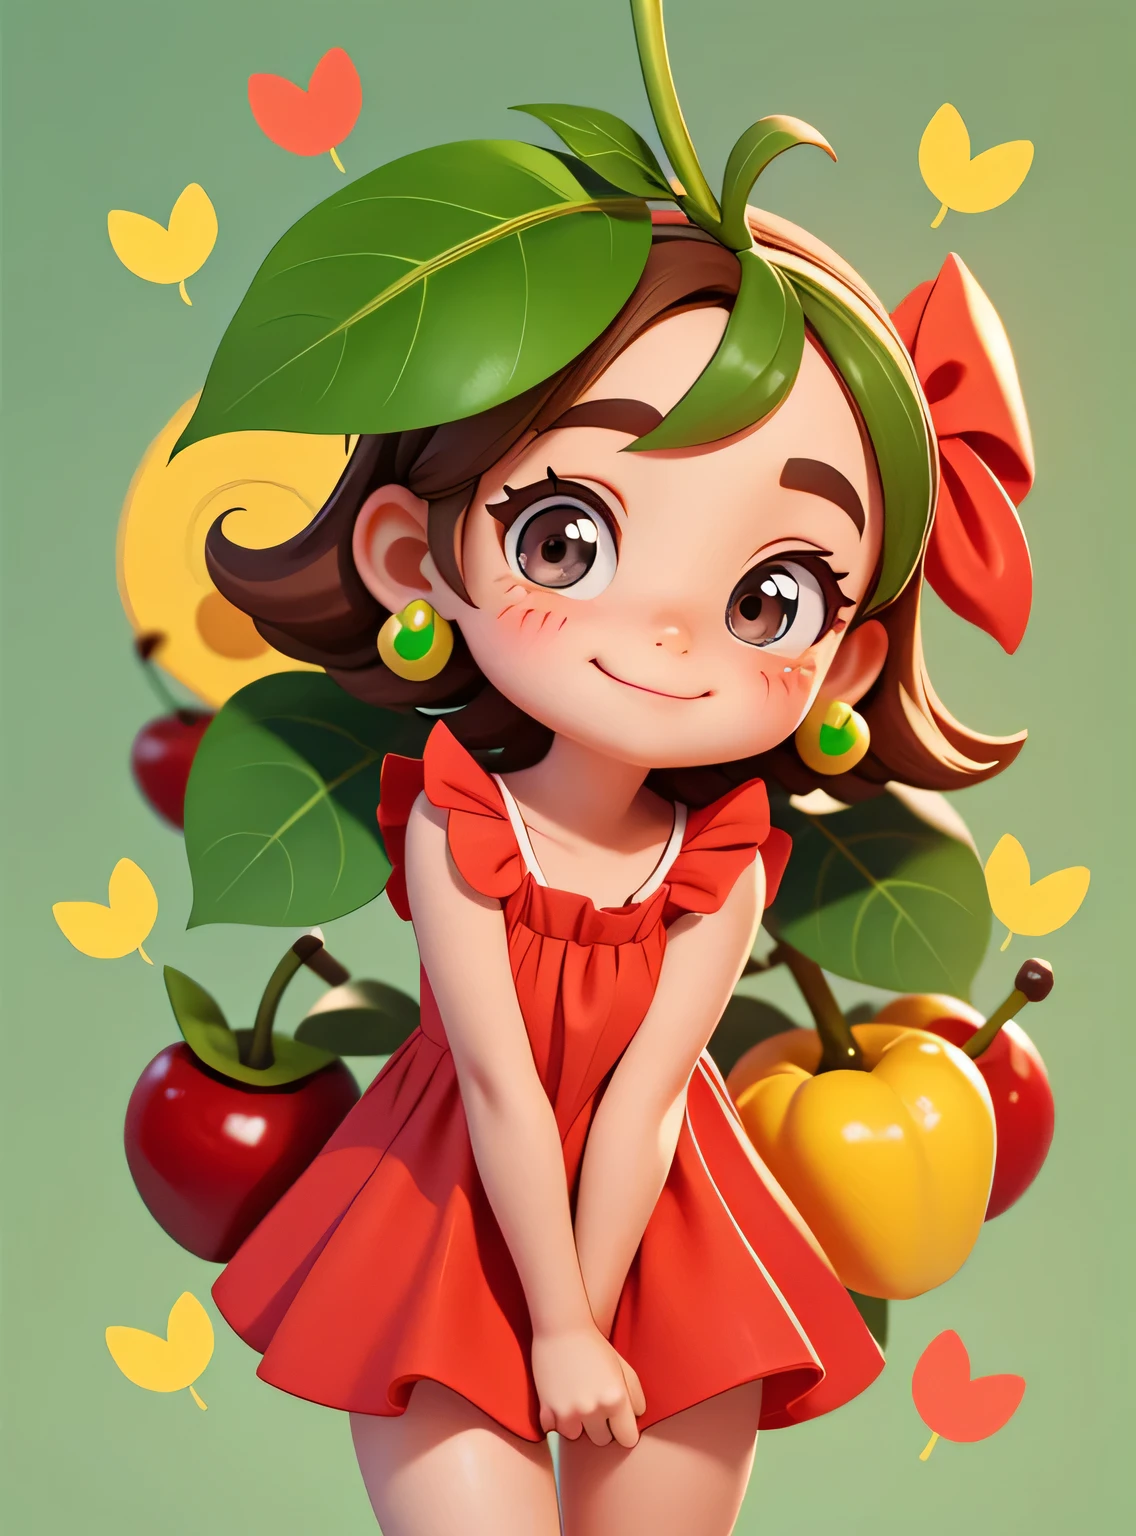 Una pequeña cereza sonriente con lindas hojas y una pegatina con una expresión amigable. :: Afrutado y amable :: Colores rojo y verde con lindas expresiones :: pegatina 2D